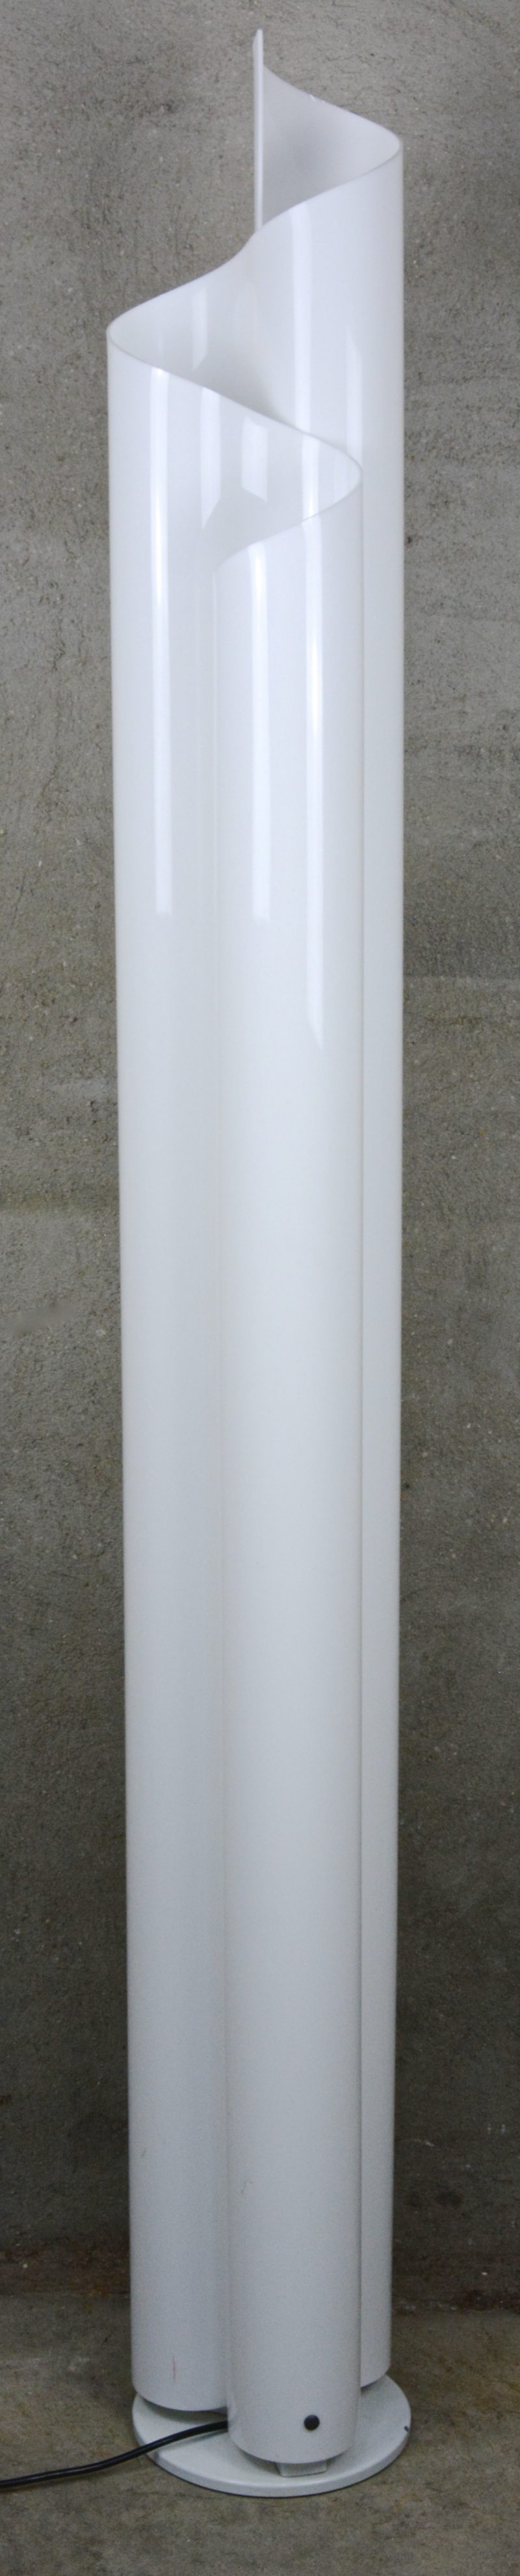 Een staande designlamp van kunststof. Model ‘Chimera’ naar ontwerp van Vico Megistretti. gemerkt.